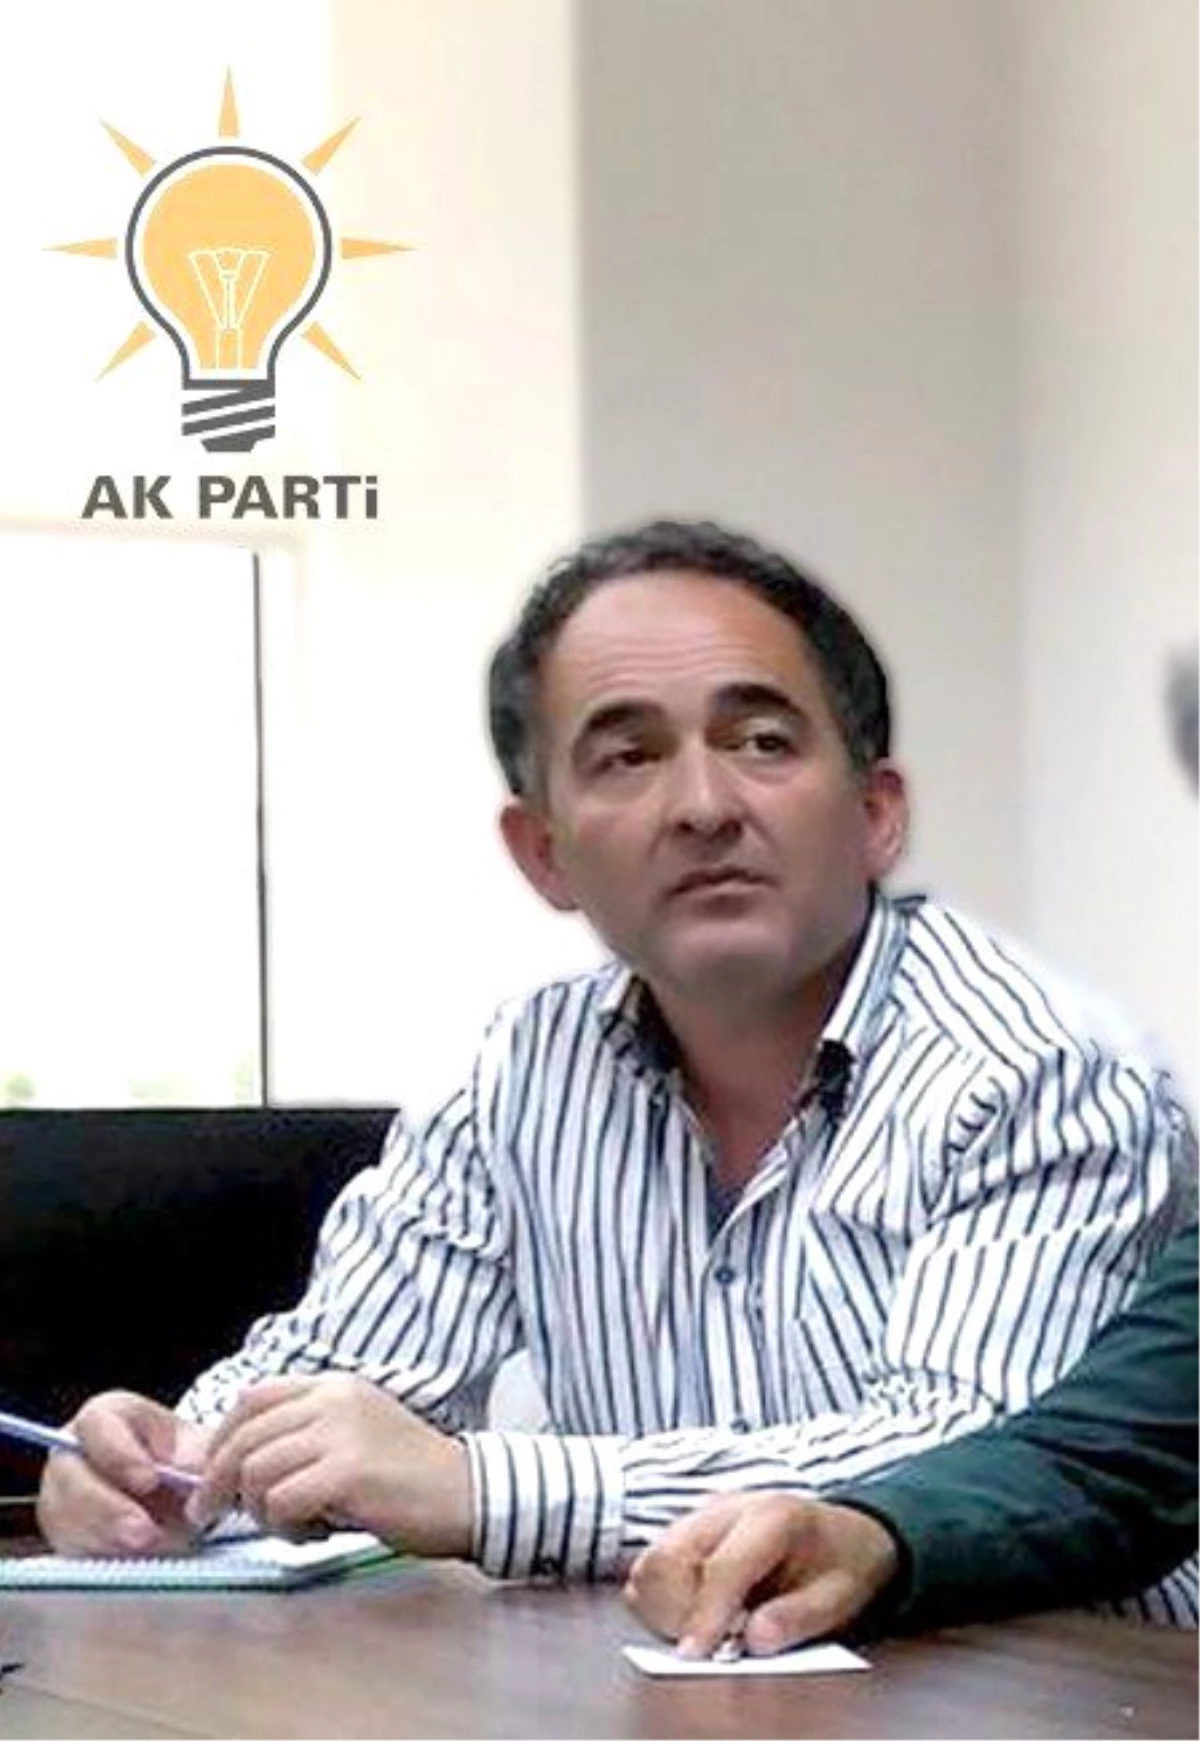 AK Parti Edremit İlçe Başkanı Metin Örkçü Açıklaması